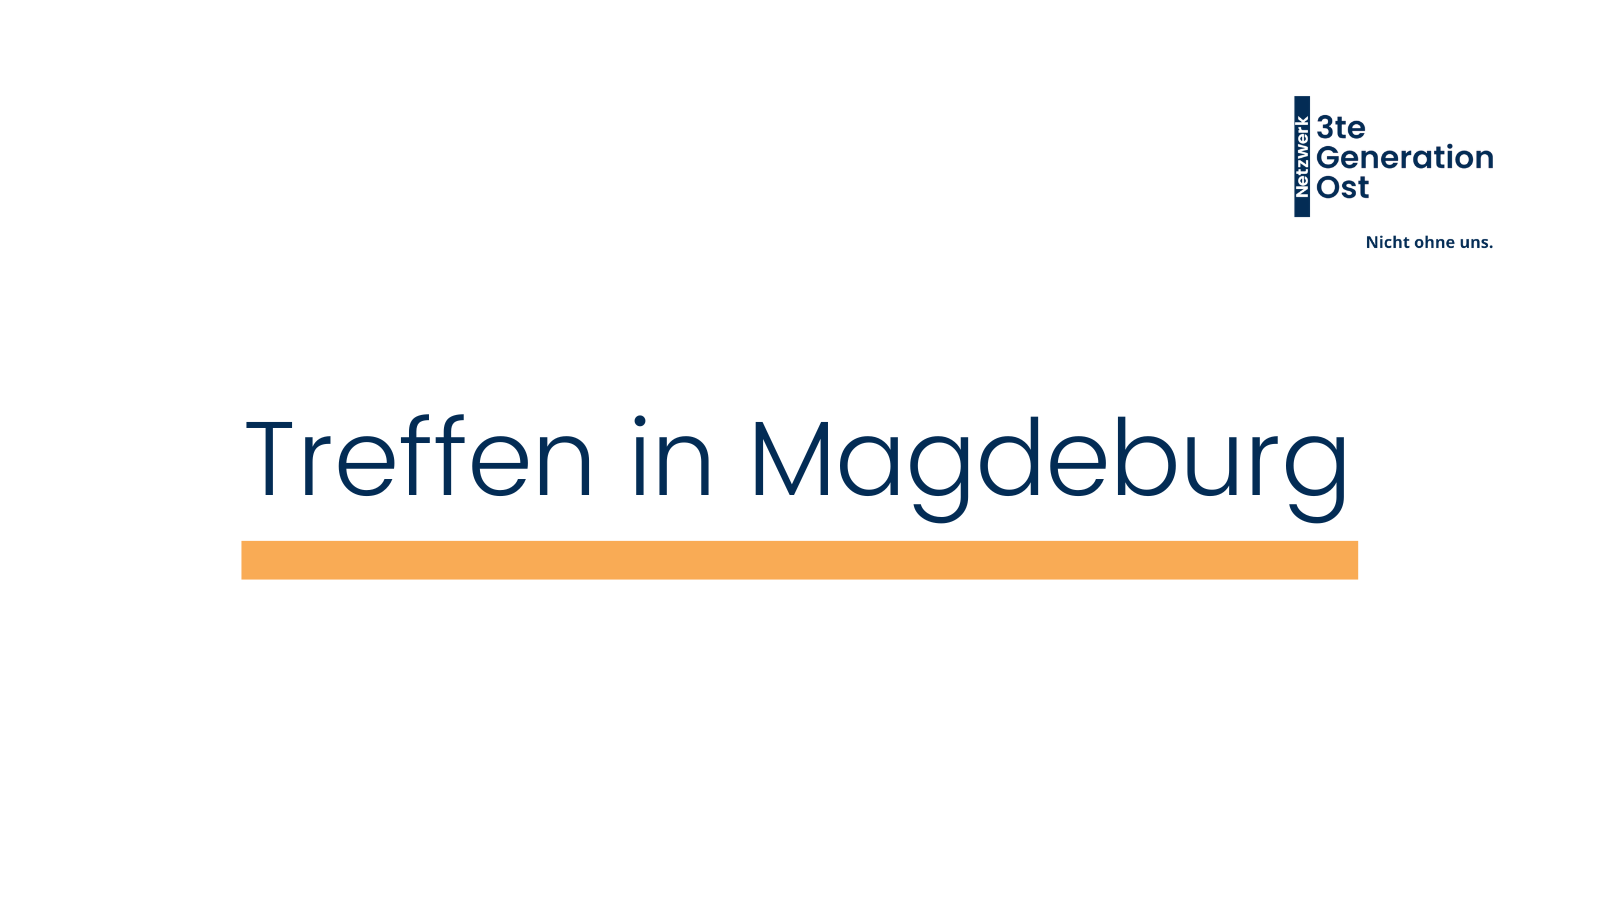 Weißer Hintergrund, Schrift mittig in dunkelblau "Treffen in Magdeburg" orangener Unterstrich, rechts oben dunkelblaues Logo des Netzwerks 3te Generation Ost